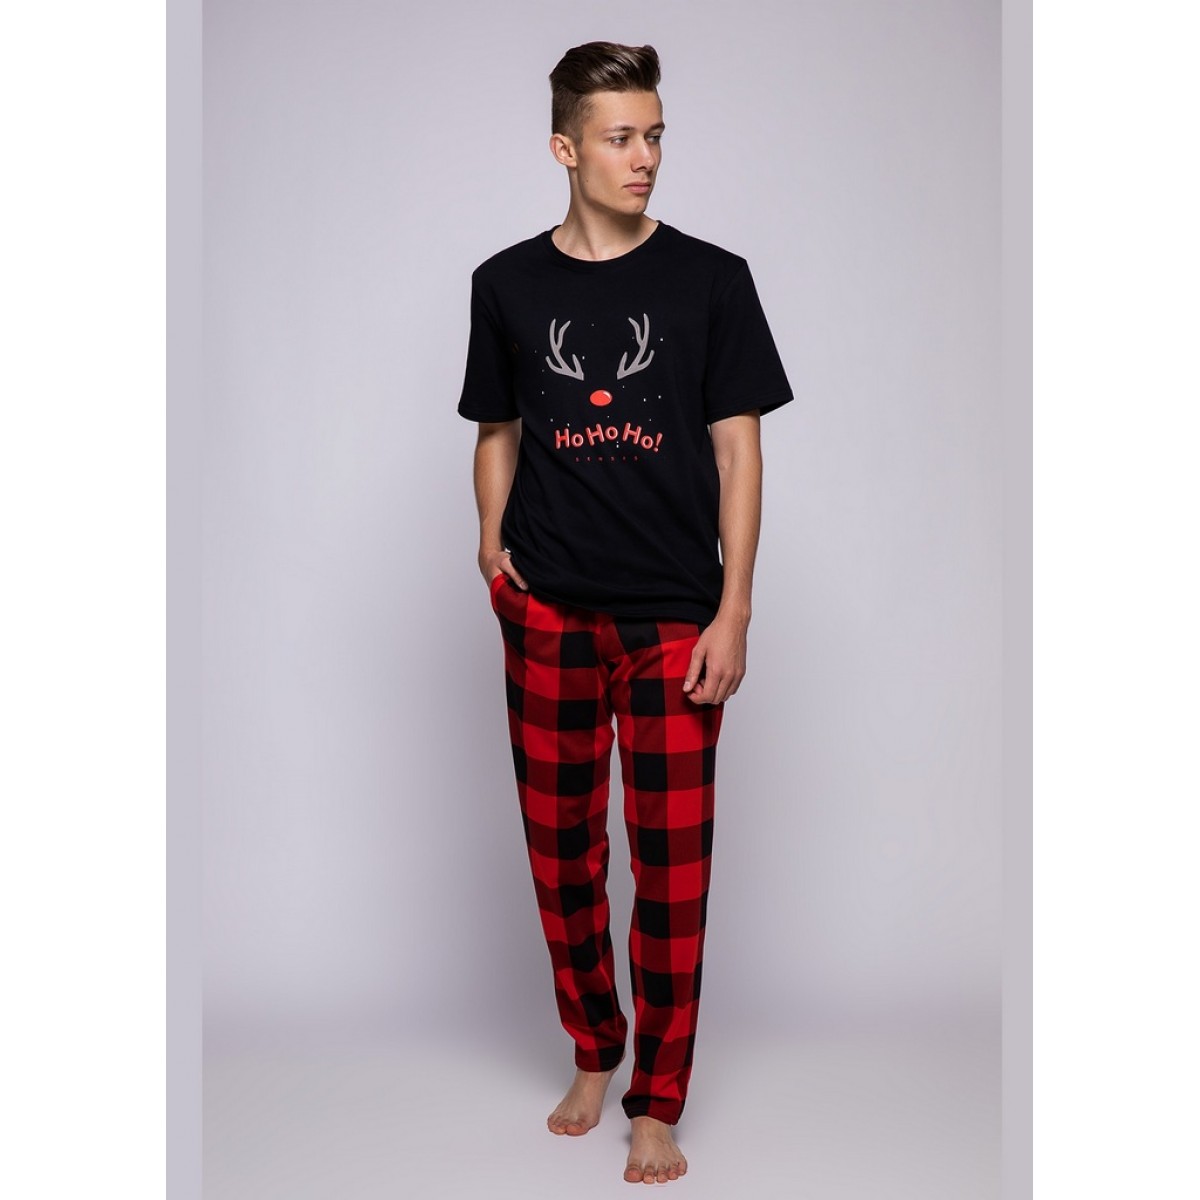 Мужская пижама с красными штанами в клетку Sensis TUONO 65975-21 - купить вМоскве